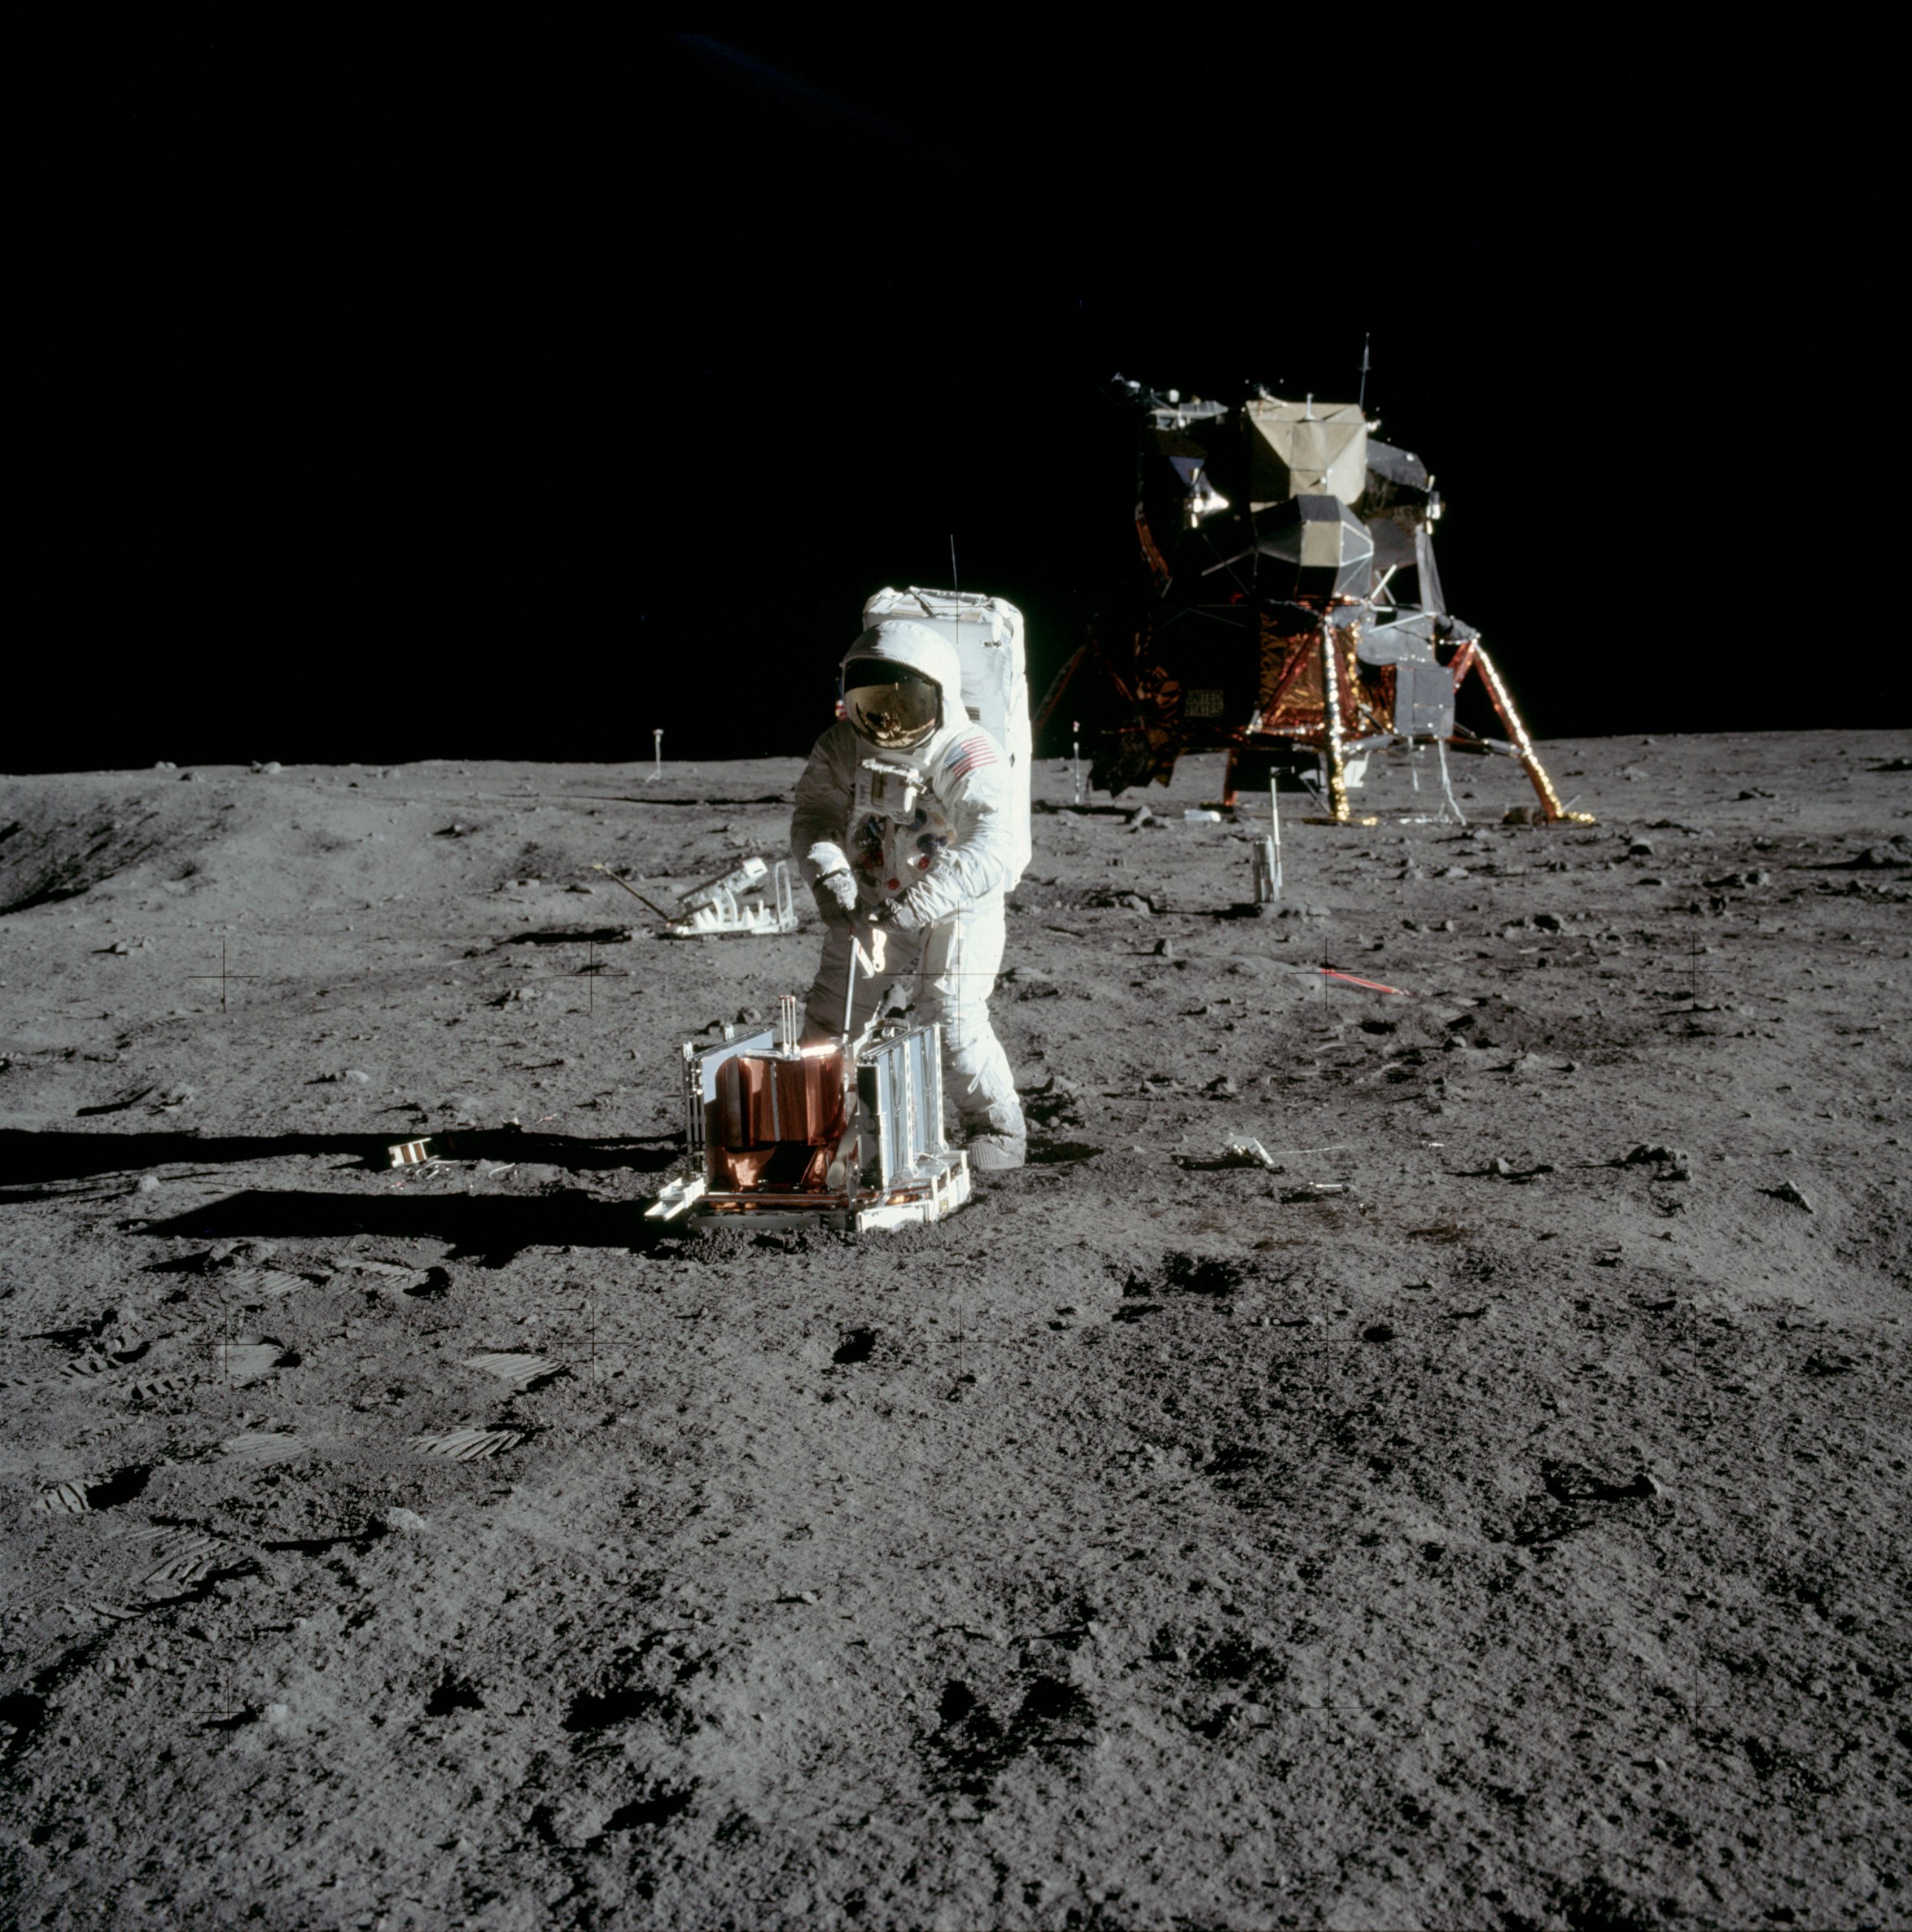 1 вступил на луну. Человек на Луне Аполлон 11. Стэнли Кубрик Аполлон 11. Аполлон 11 1969. Астронавты миссии Аполлон 11.